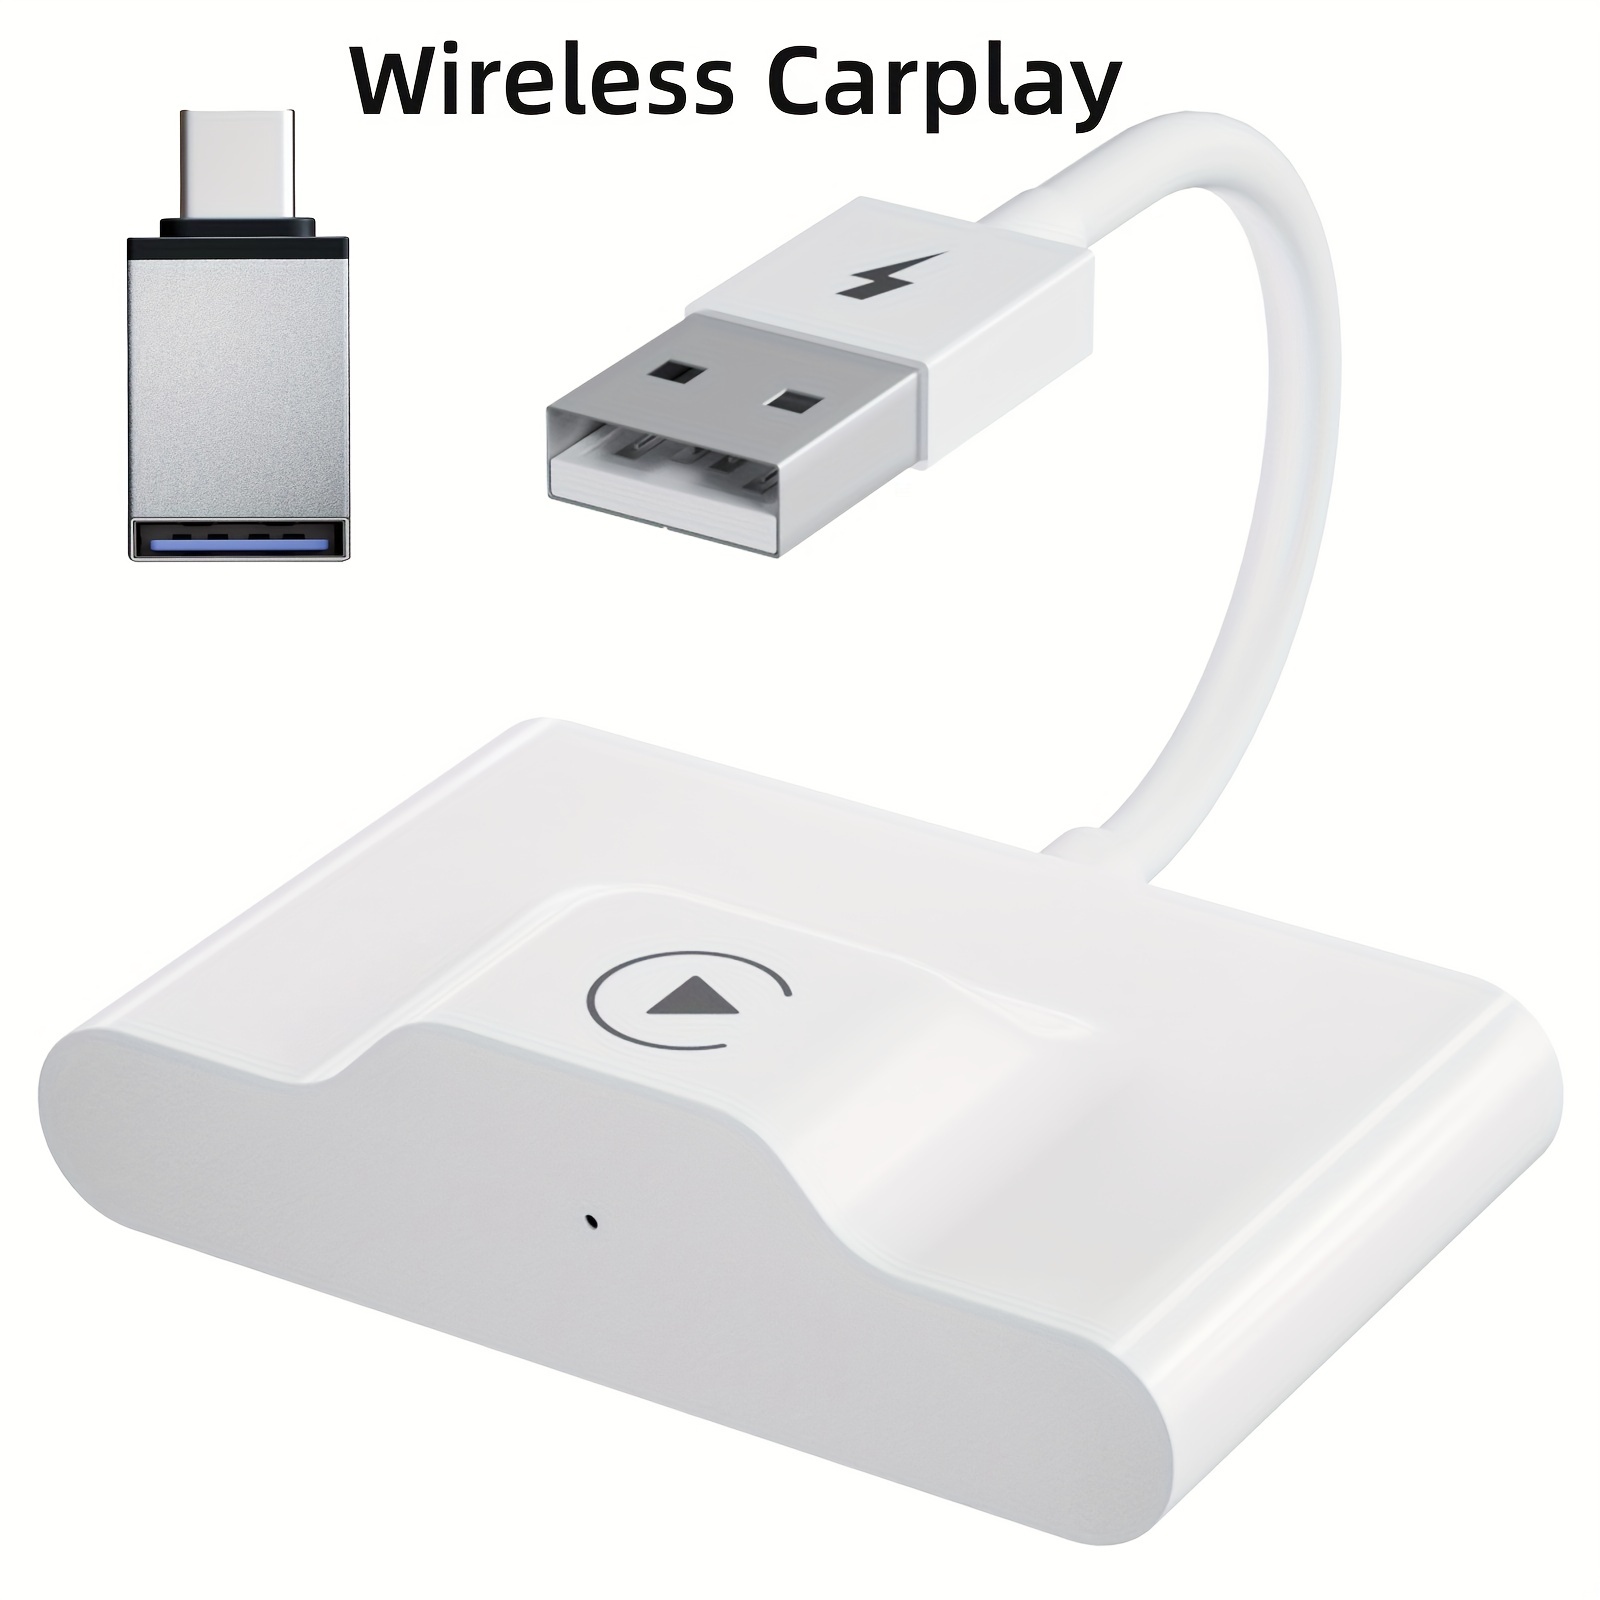  Adaptador inalámbrico CarPlay para iPhone, Apple CarPlay Dongle  para automóviles CarPlay con cable OEM, convertir CarPlay con cable a  inalámbrico, compatible con actualización en línea Plug & Play, el  adaptador CarPlay